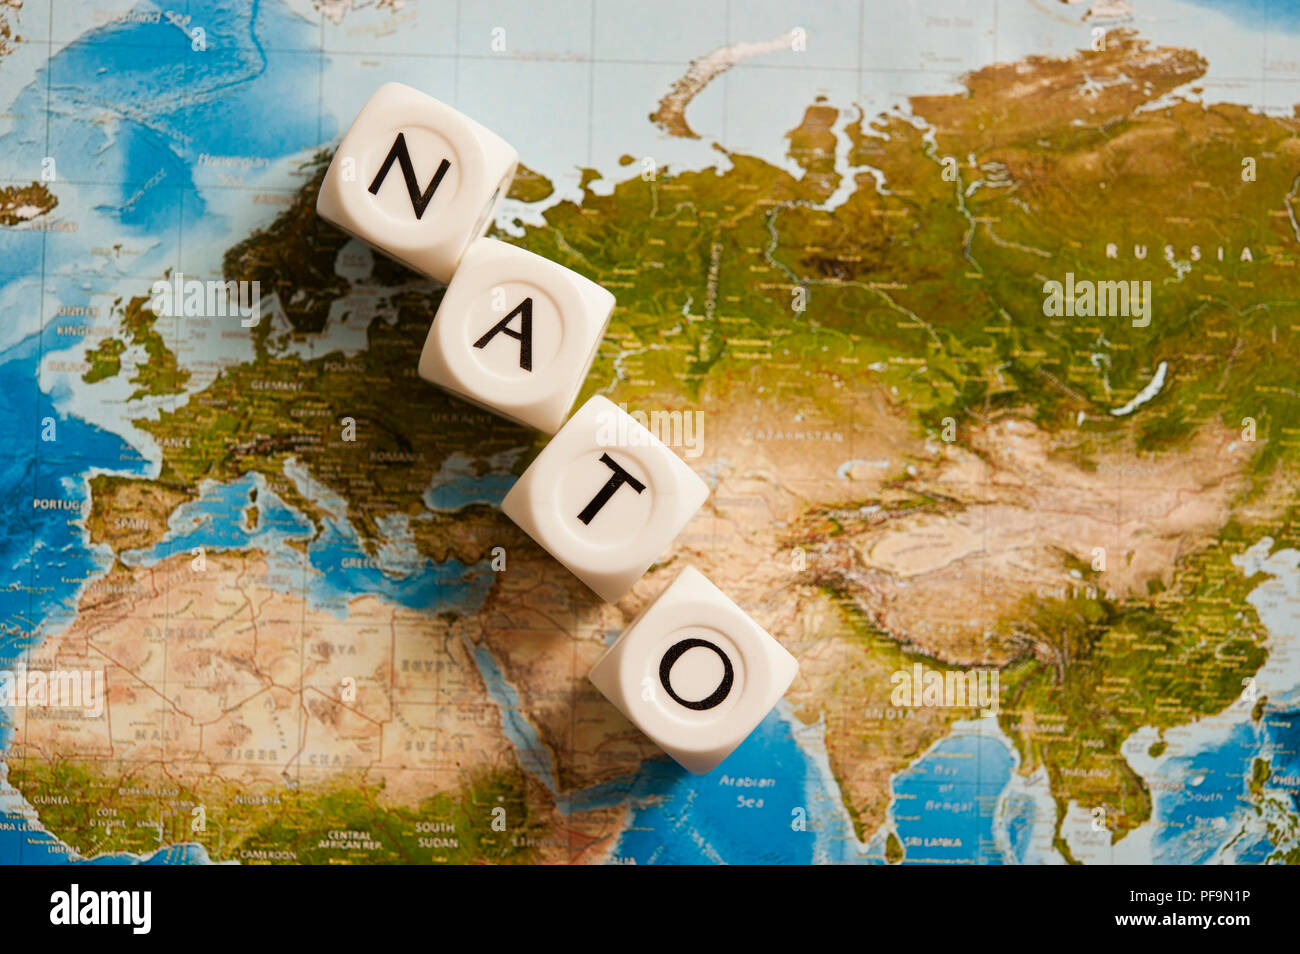 La NATO scritto con dadi su una mappa del mondo, concetto per l'Organizzazione del Trattato del Nord Atlantico espandendo i suoi membri Foto Stock